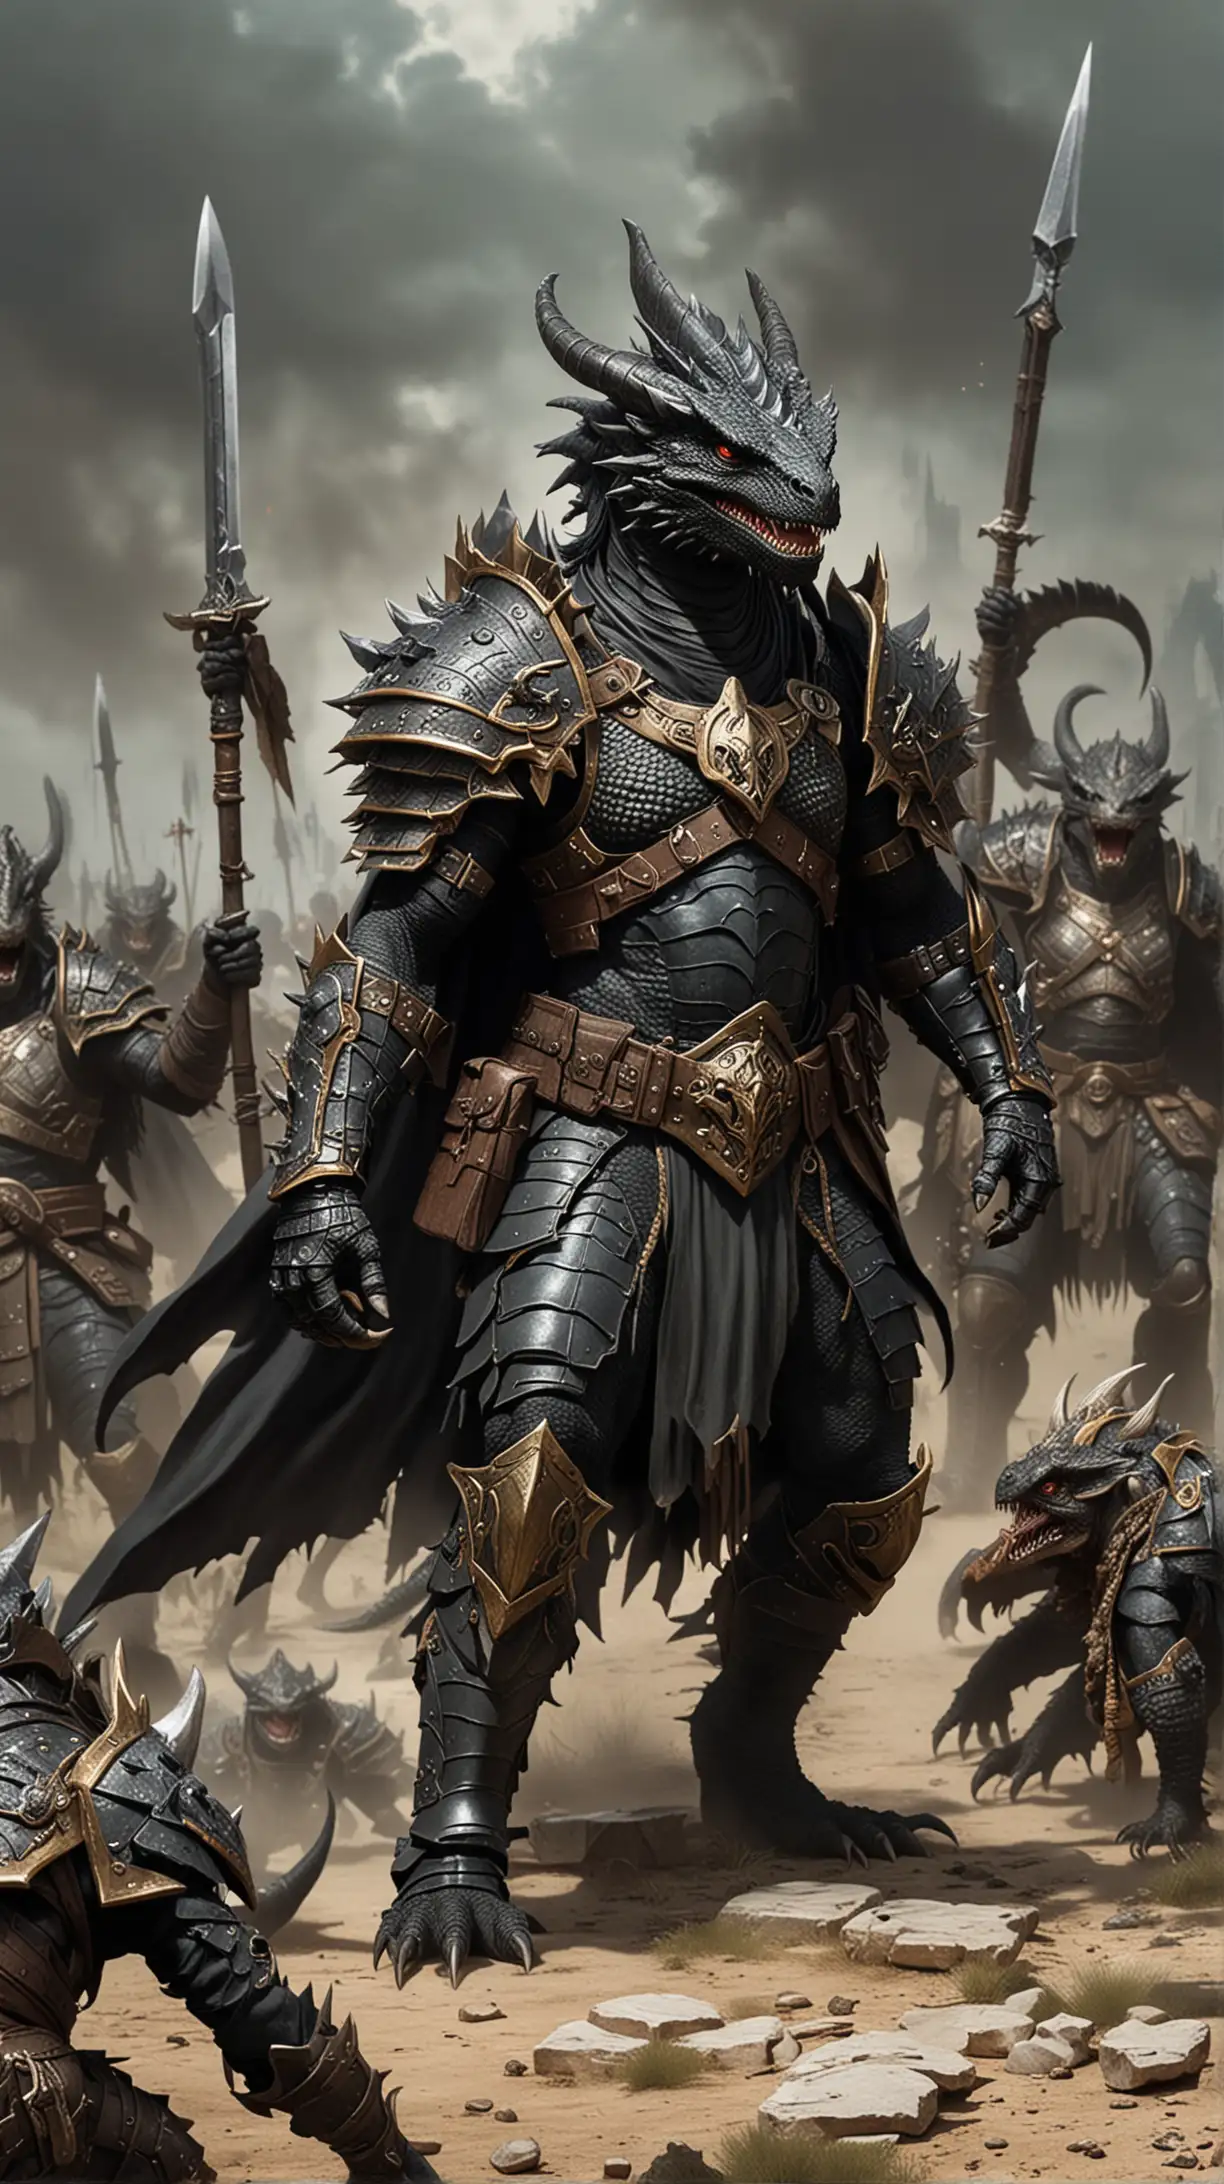 Black Dragonborn Warrior Leading Lizardmen Army in Plate Armor